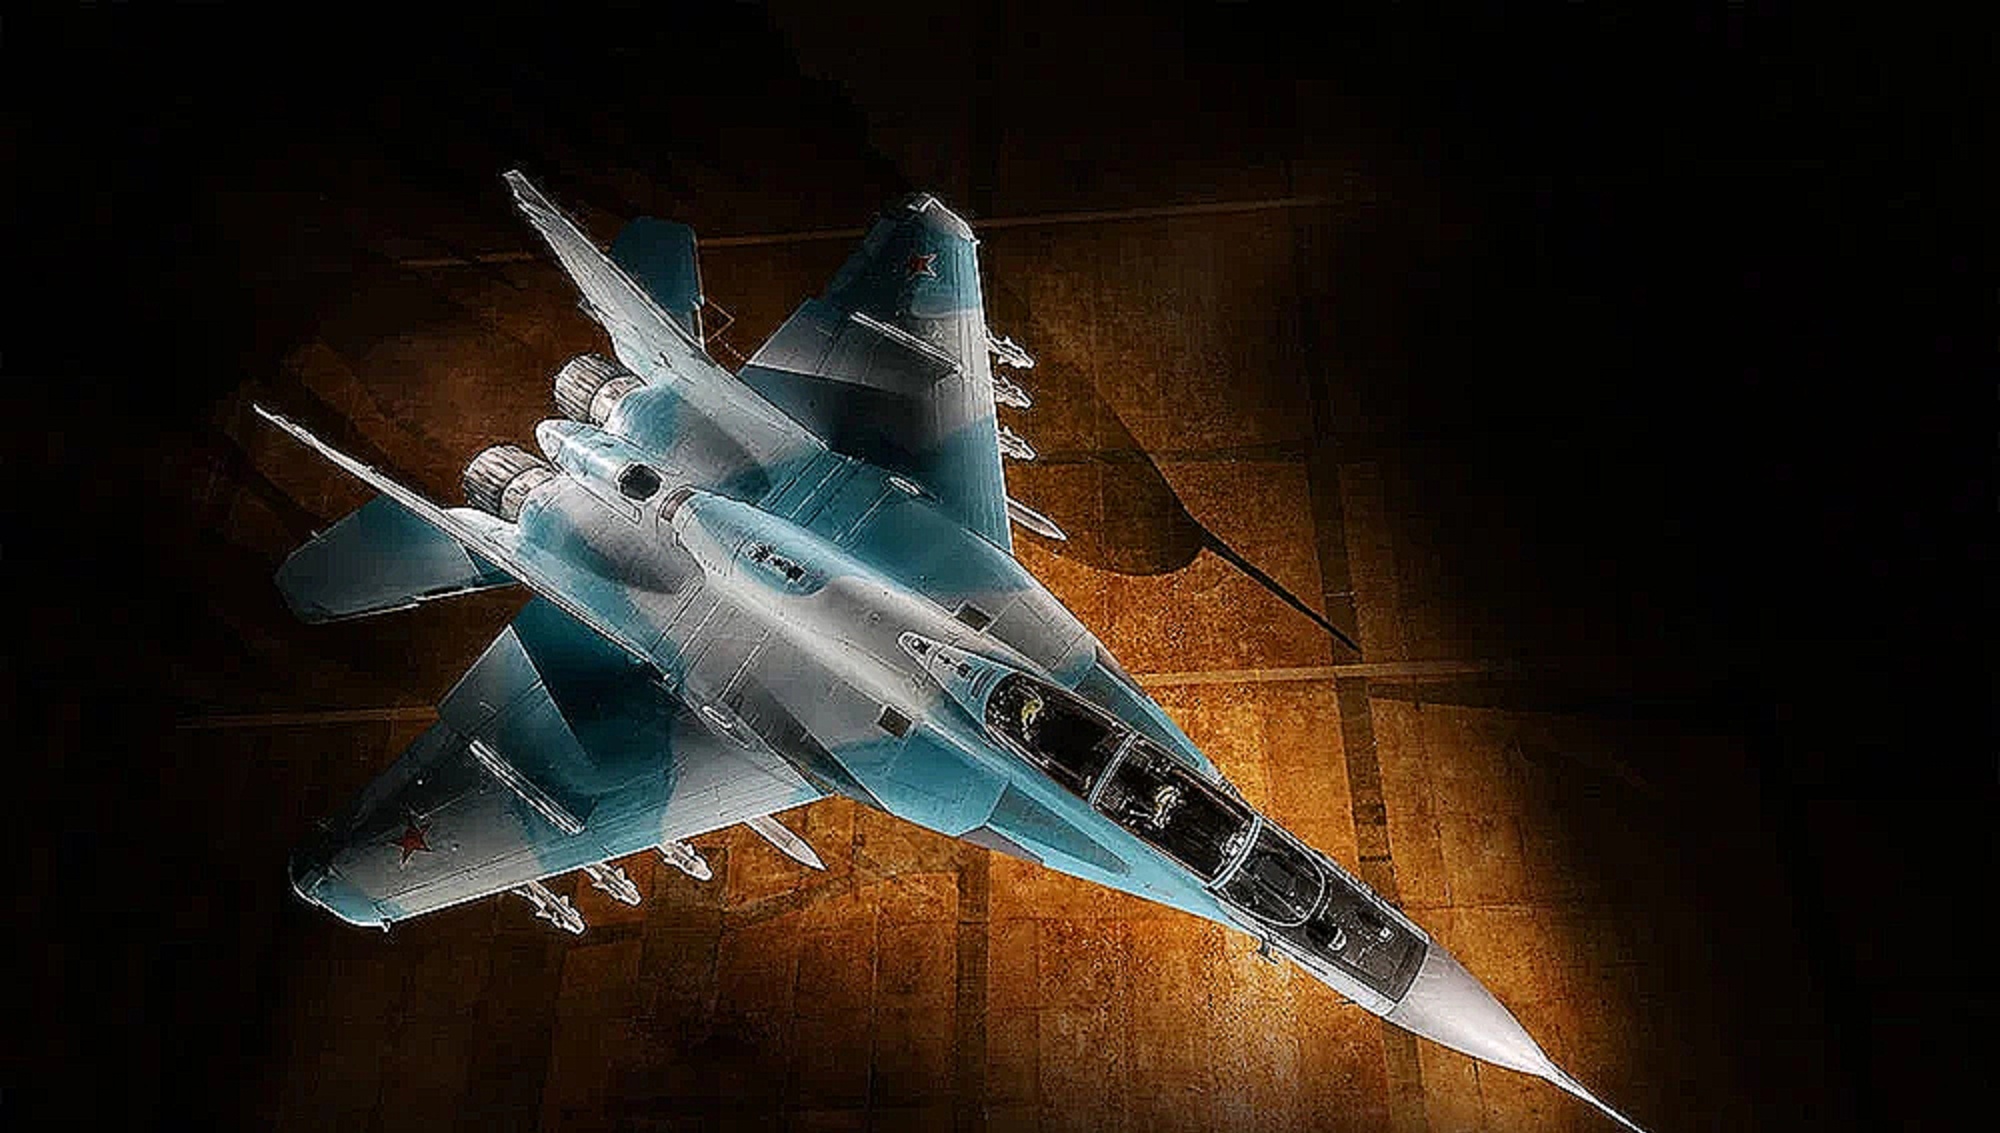 米格-35用精美壁纸级广告来抵挡"枭龙"攻势